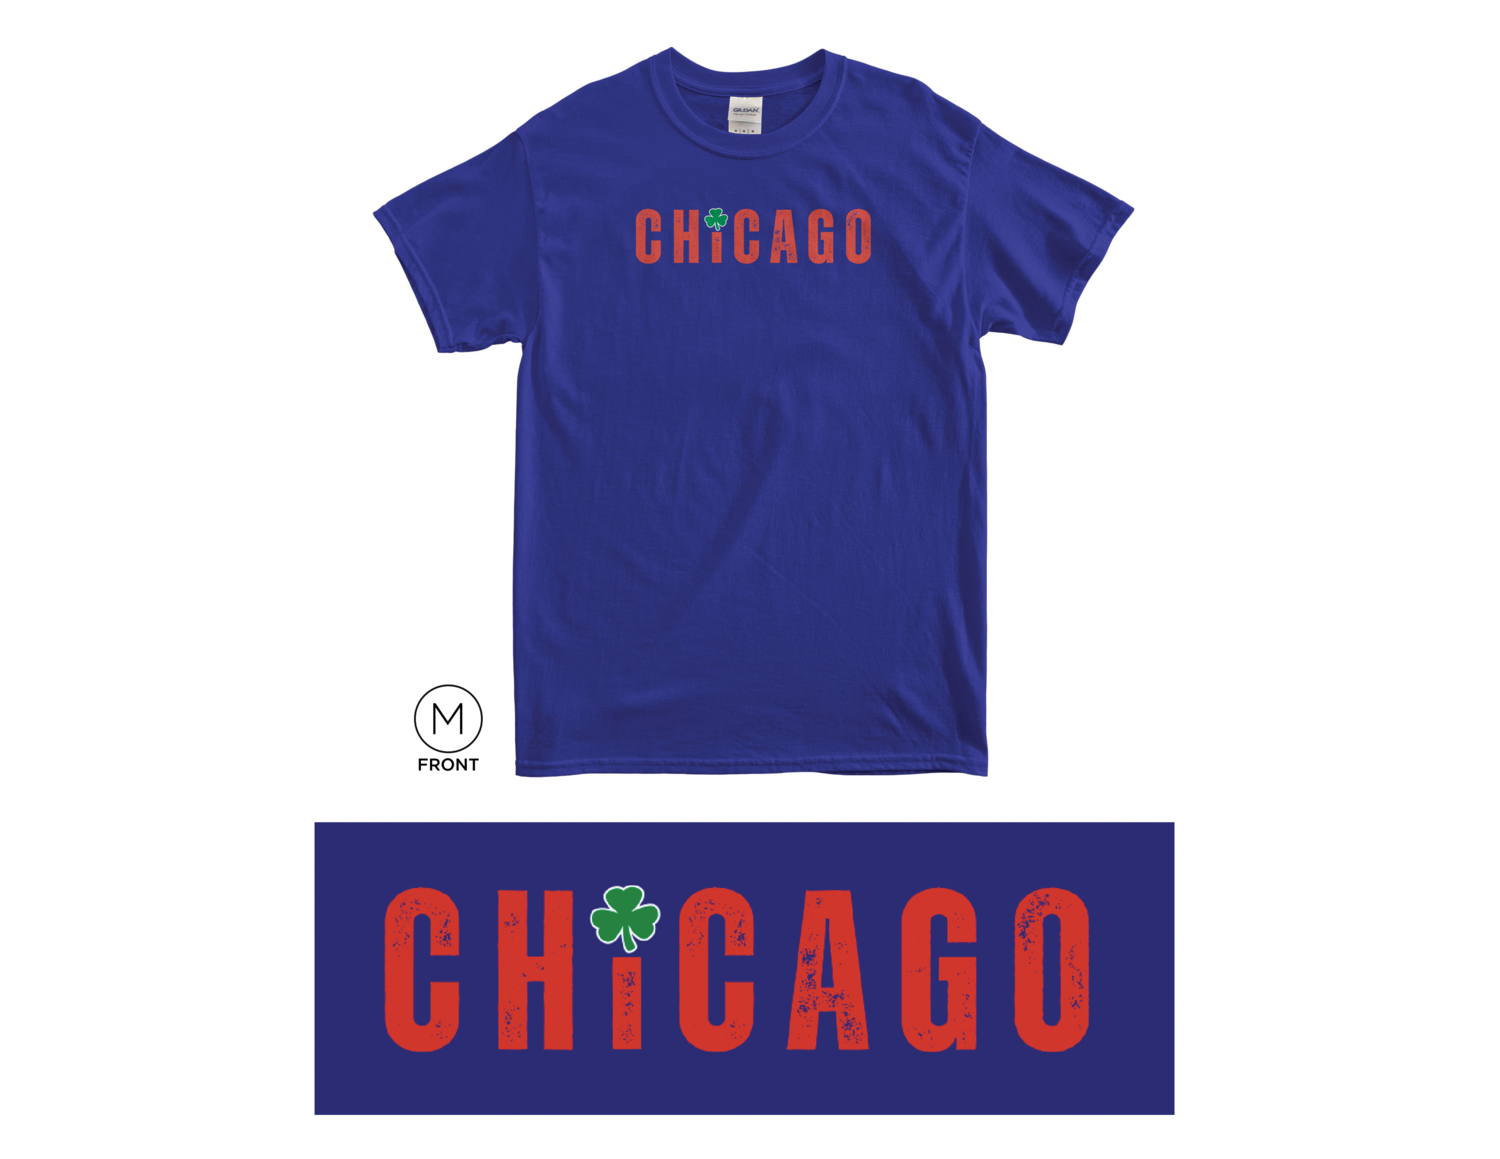 Chicago Irish Baseball Hometown Series T-shirts